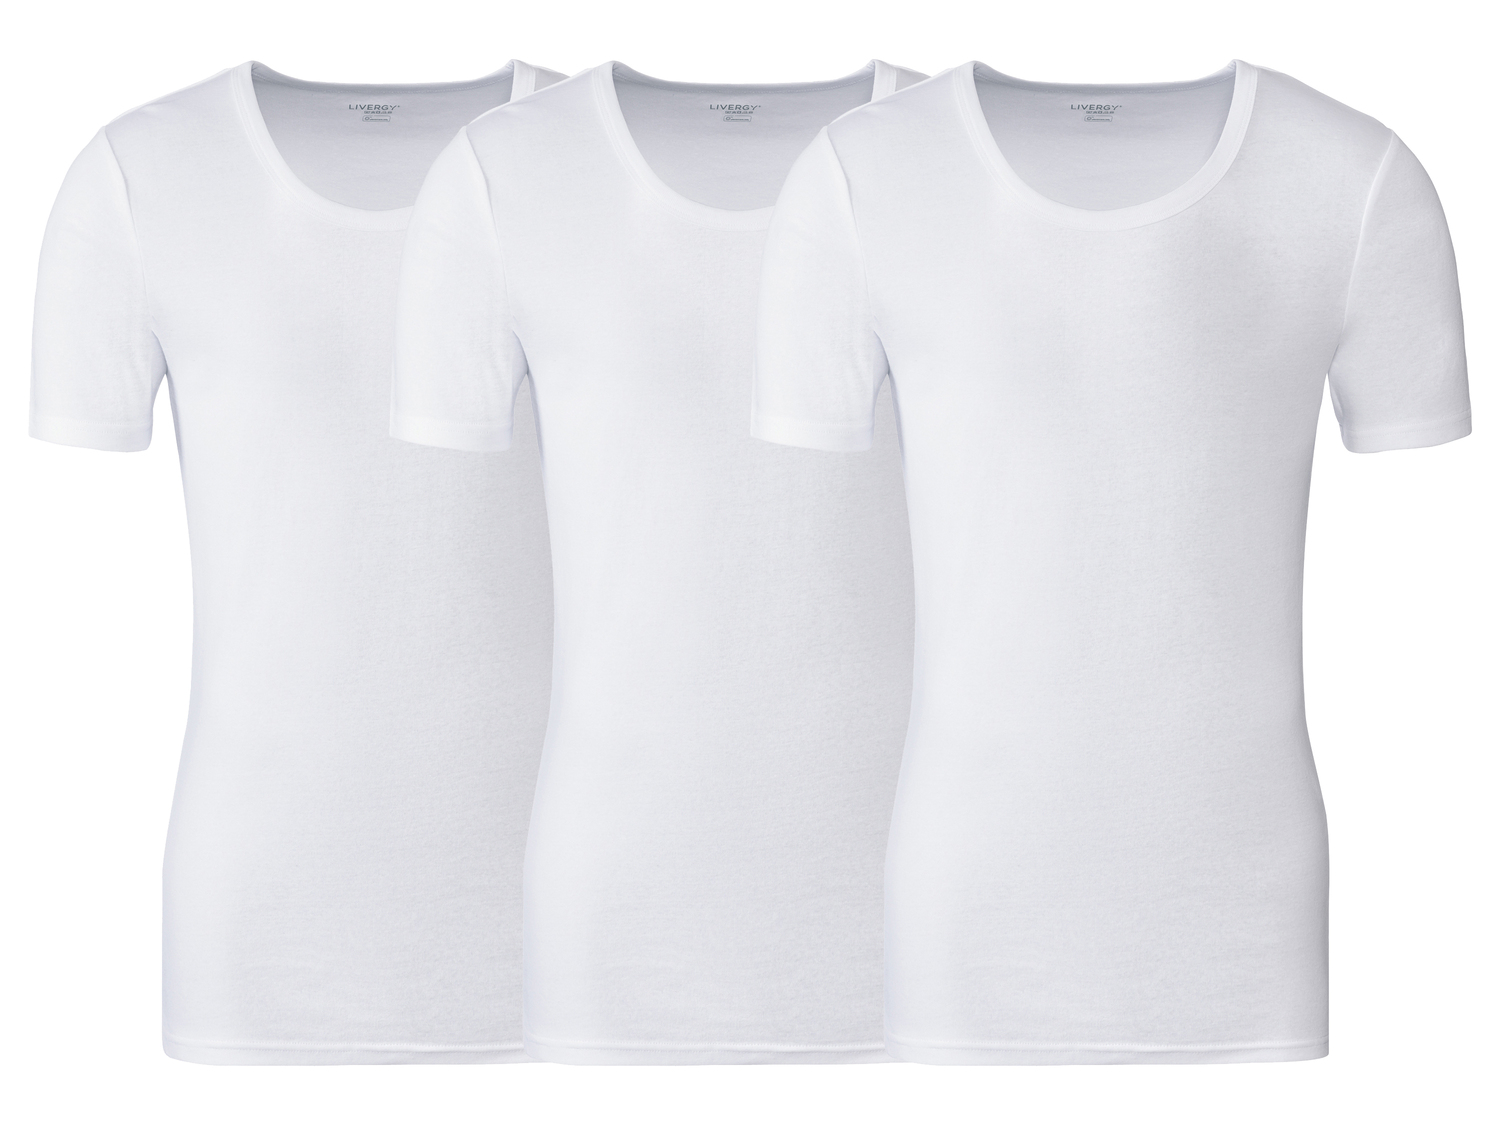 T-Shirt intima da uomo Livergy, prezzo 8.99 &#8364; 
3 pezzi - Misure: M-XL ...